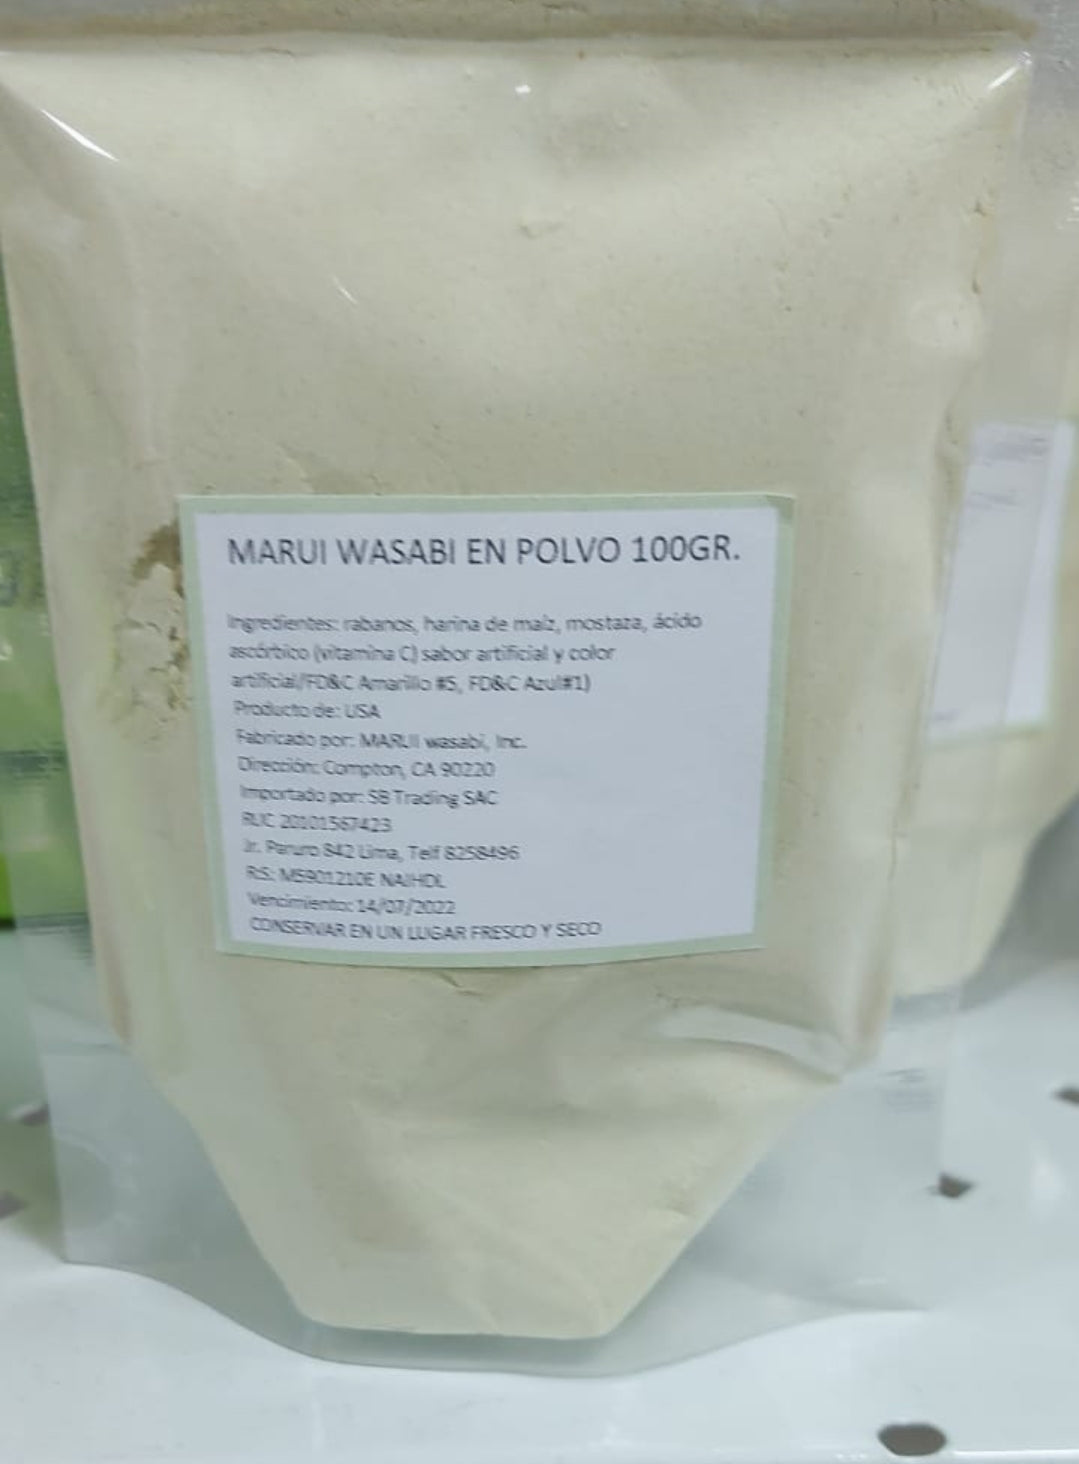 Wasabi en polvo Marui 100gr